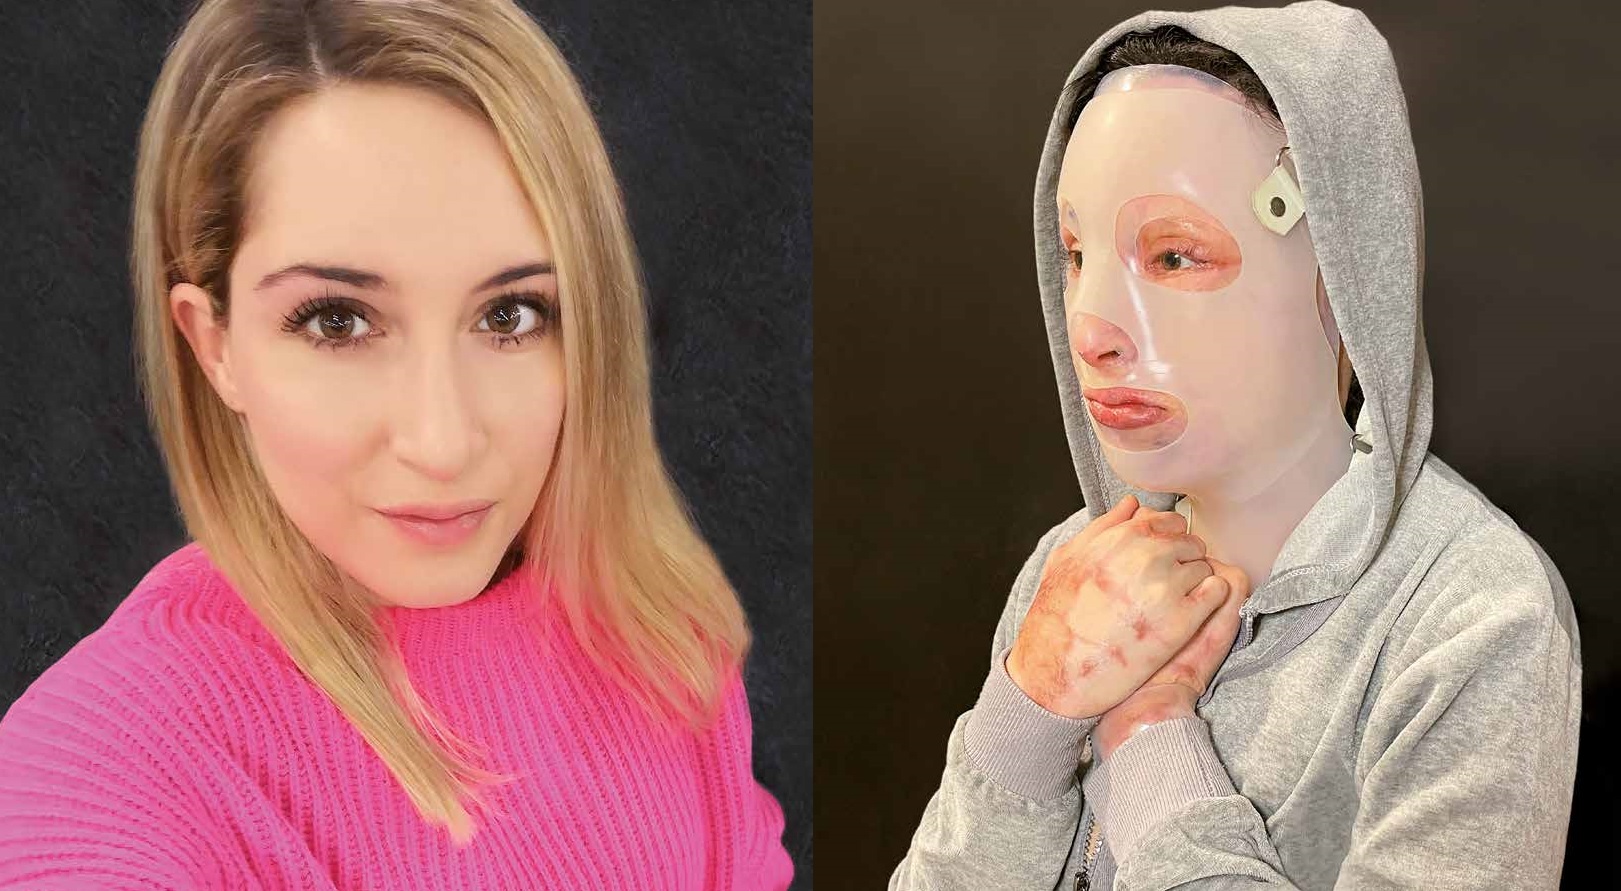 Επίθεση με βιτριόλι: Η φωτογραφία της Ιωάννας μέσα από το νοσοκομείο – Σοκάρουν οι πληγές της